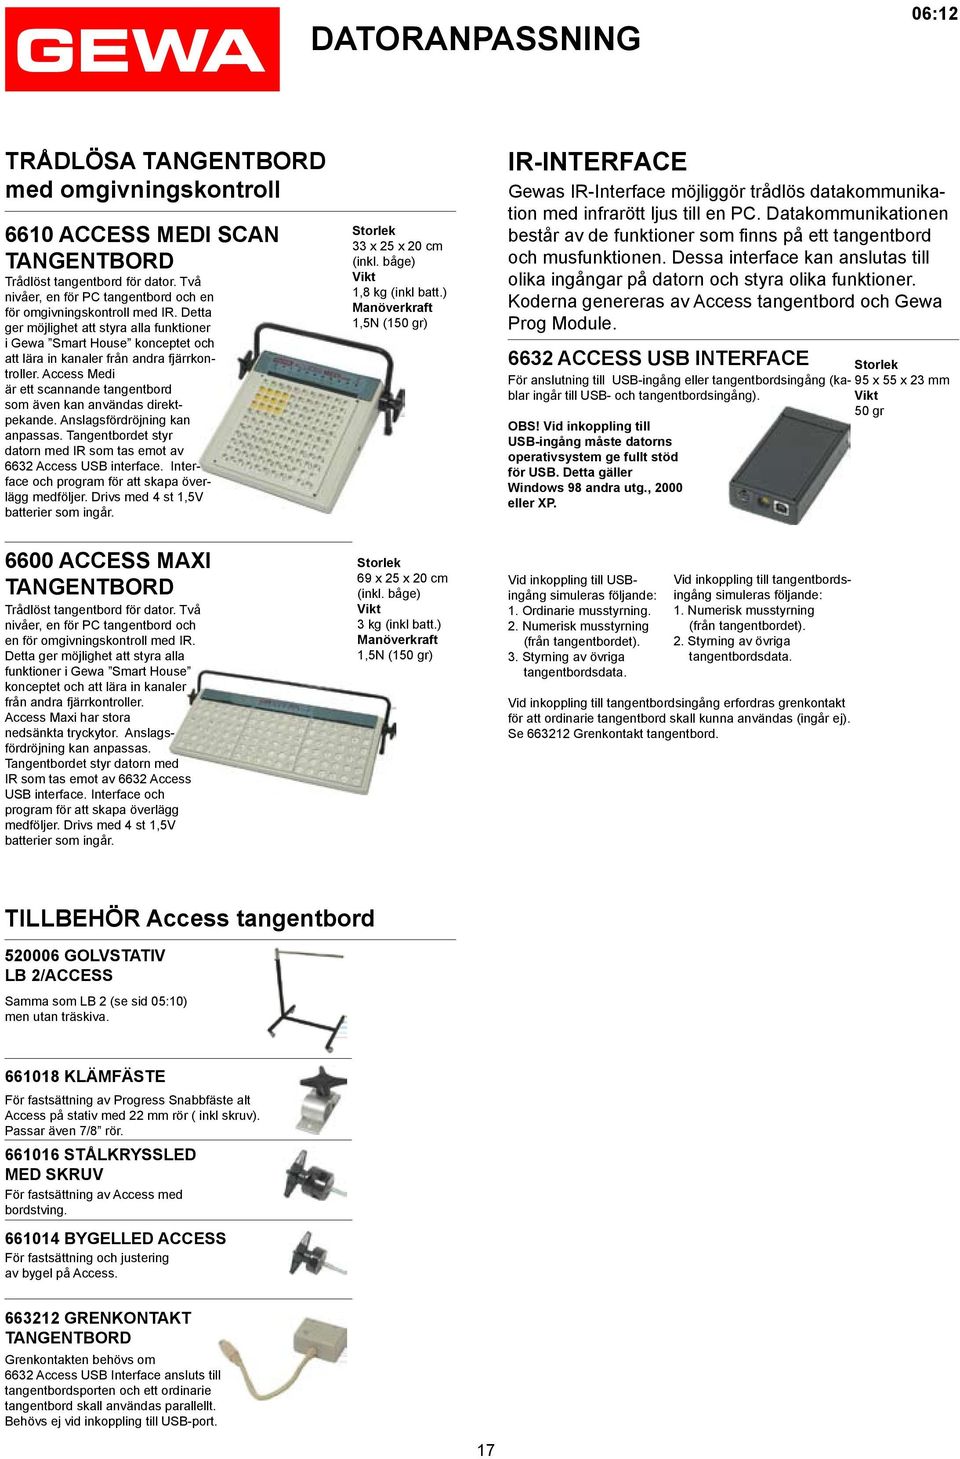 Access Medi är ett scannande tangent bord som även kan användas direktpekande. Anslagsfördröjning kan anpassas. Tangent bordet styr datorn med IR som tas emot av 6632 Access USB interface.